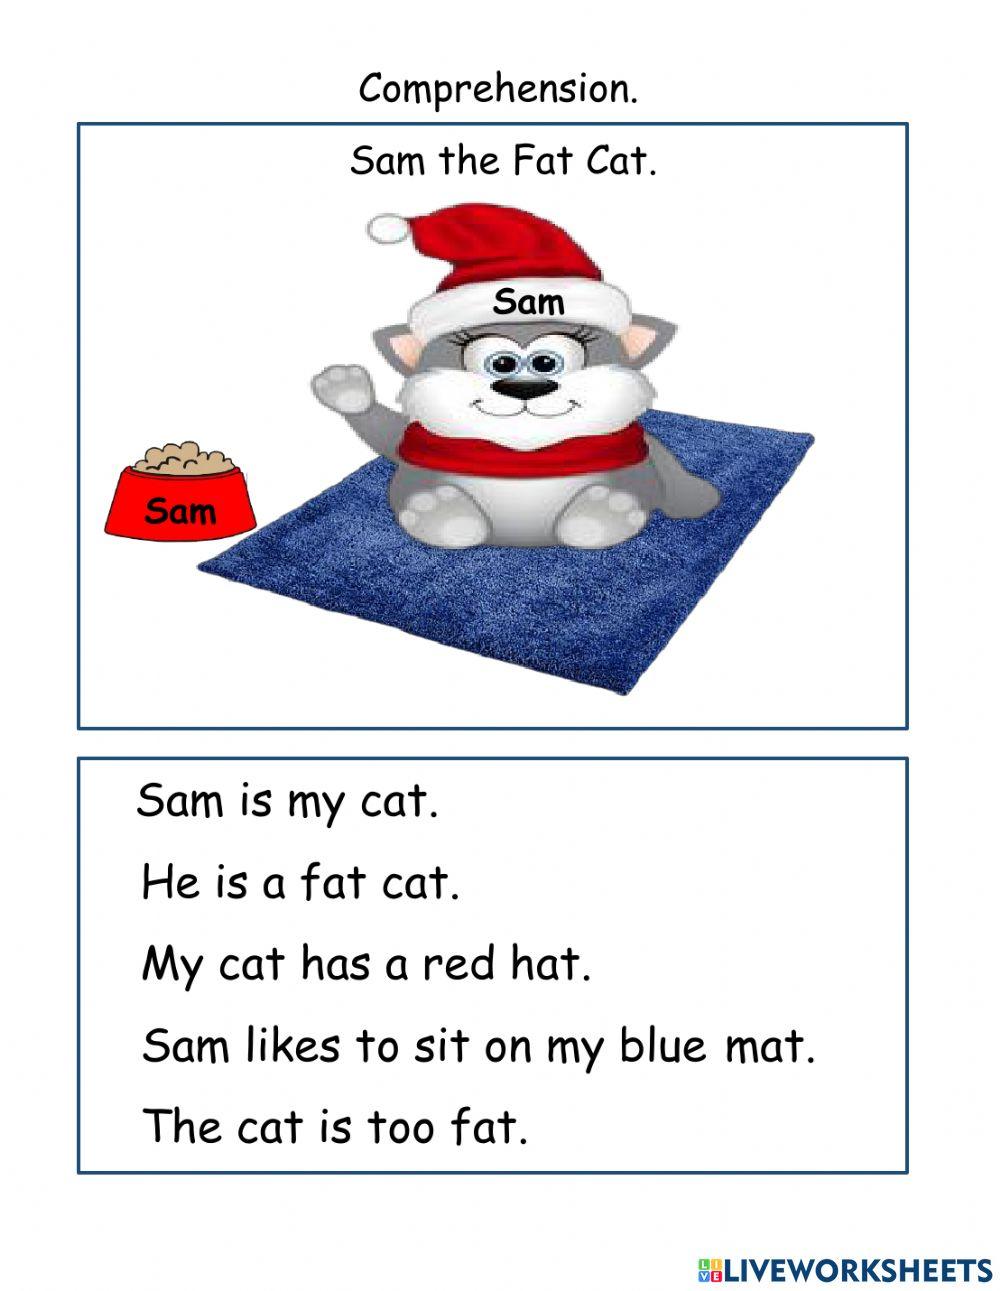 Sam the Fat Cat.